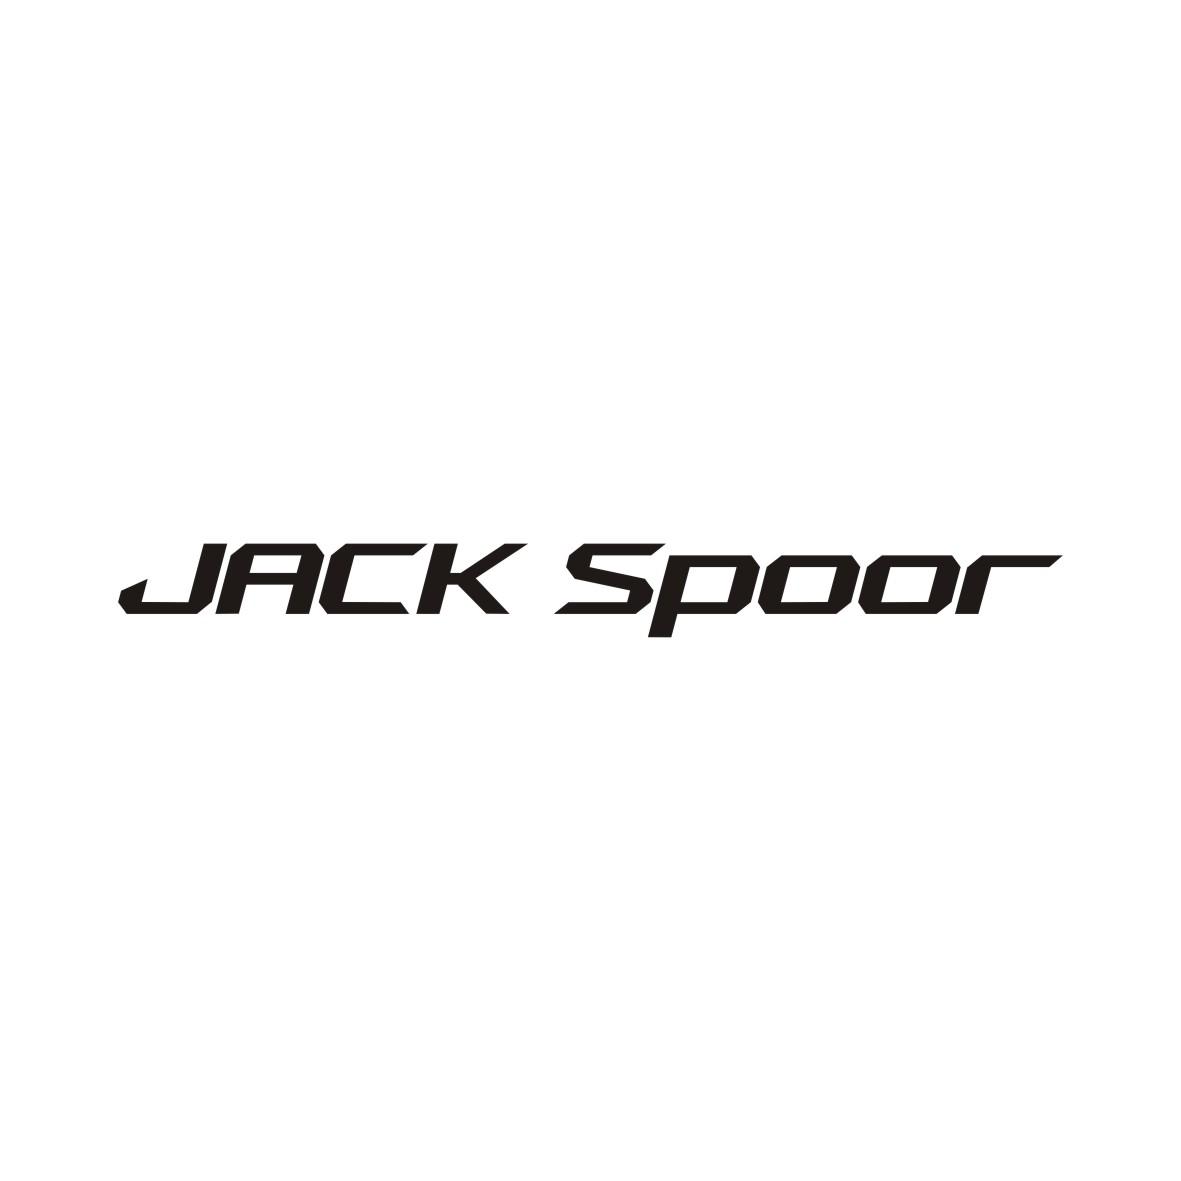 JACK SPOOR